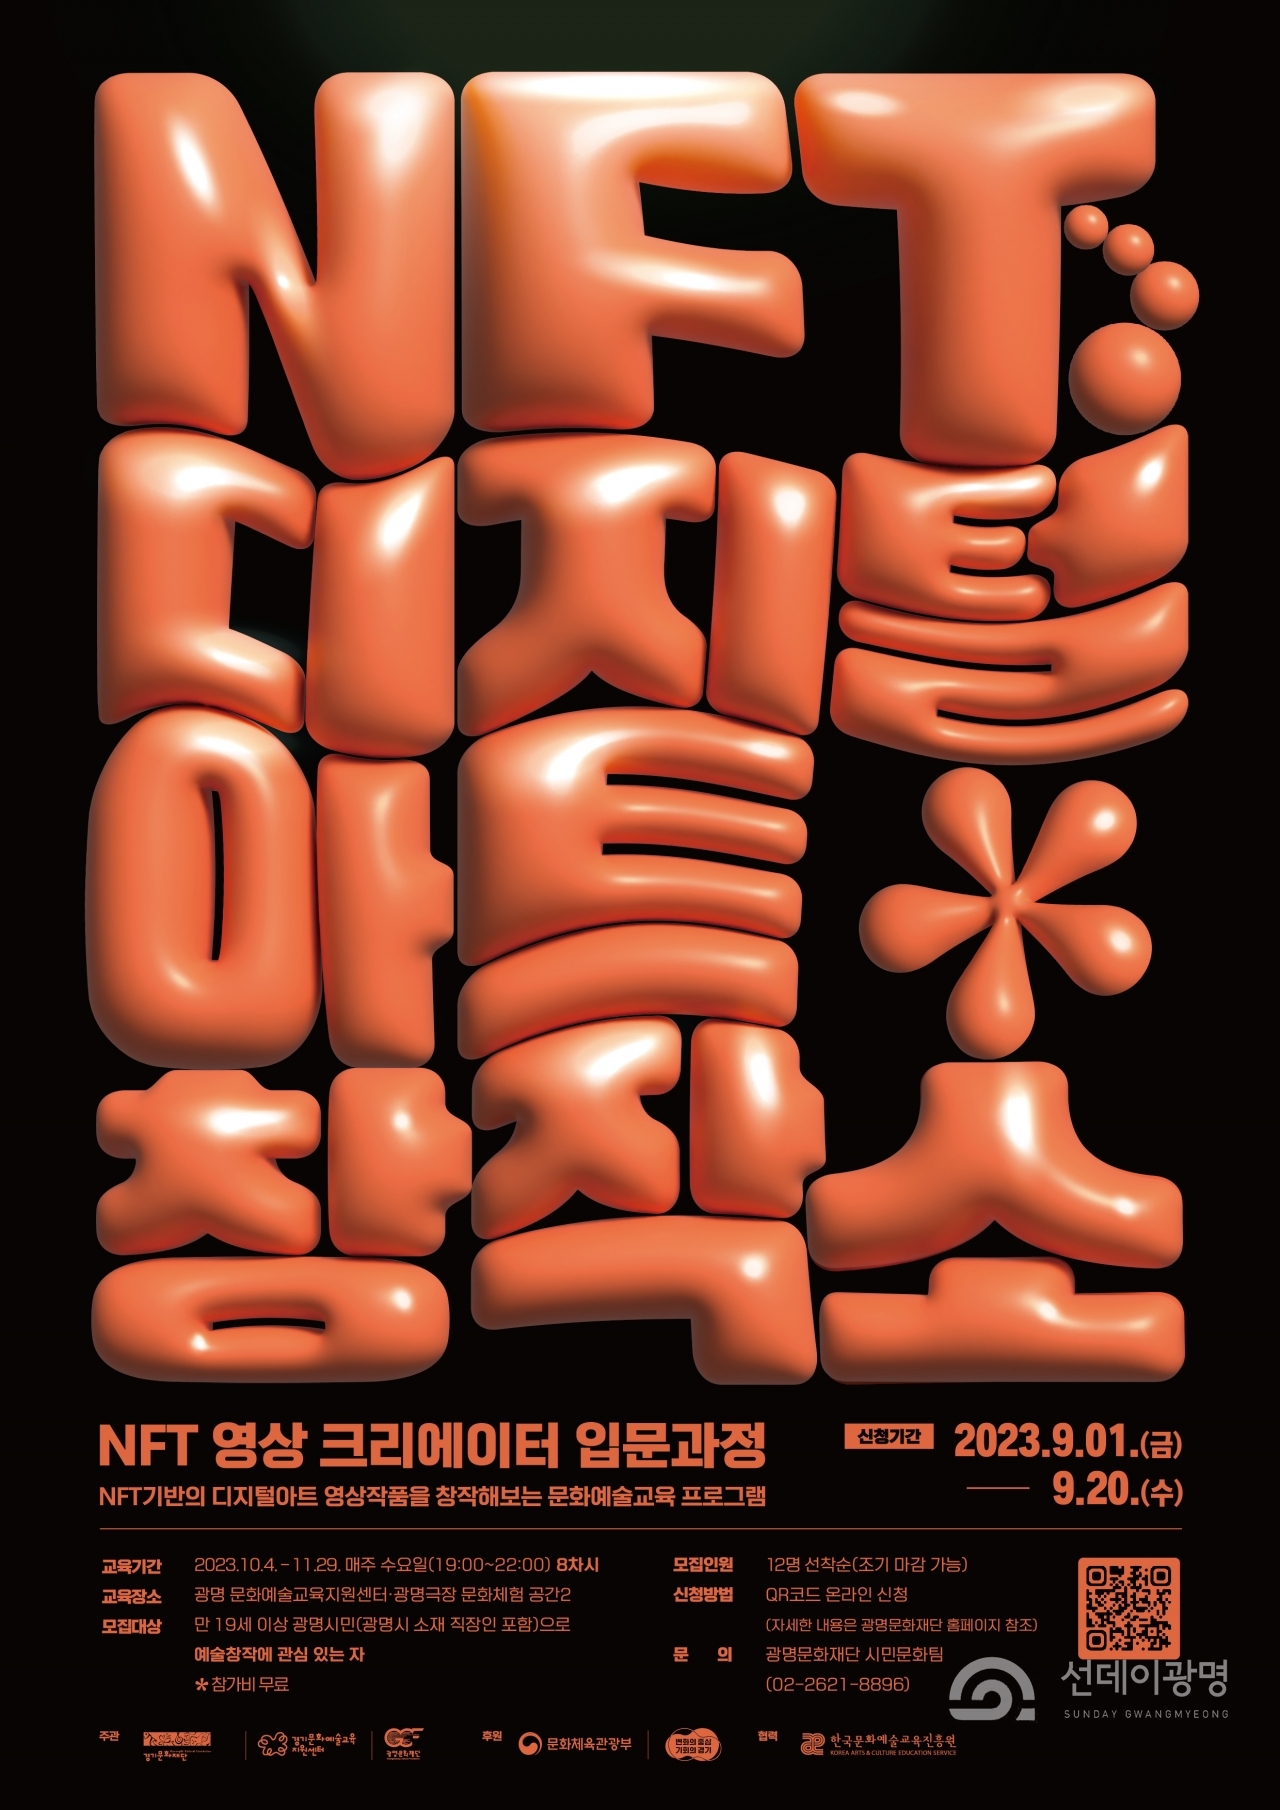  (재)광명문화재단(대표이사 어연선)은‘NFT 디지털아트 창작소: NFT 영상 크리에이터 입문과정(이하 NFT 입문과정)’ 문화 예술교육 프로그램 참여자를 모집한다.